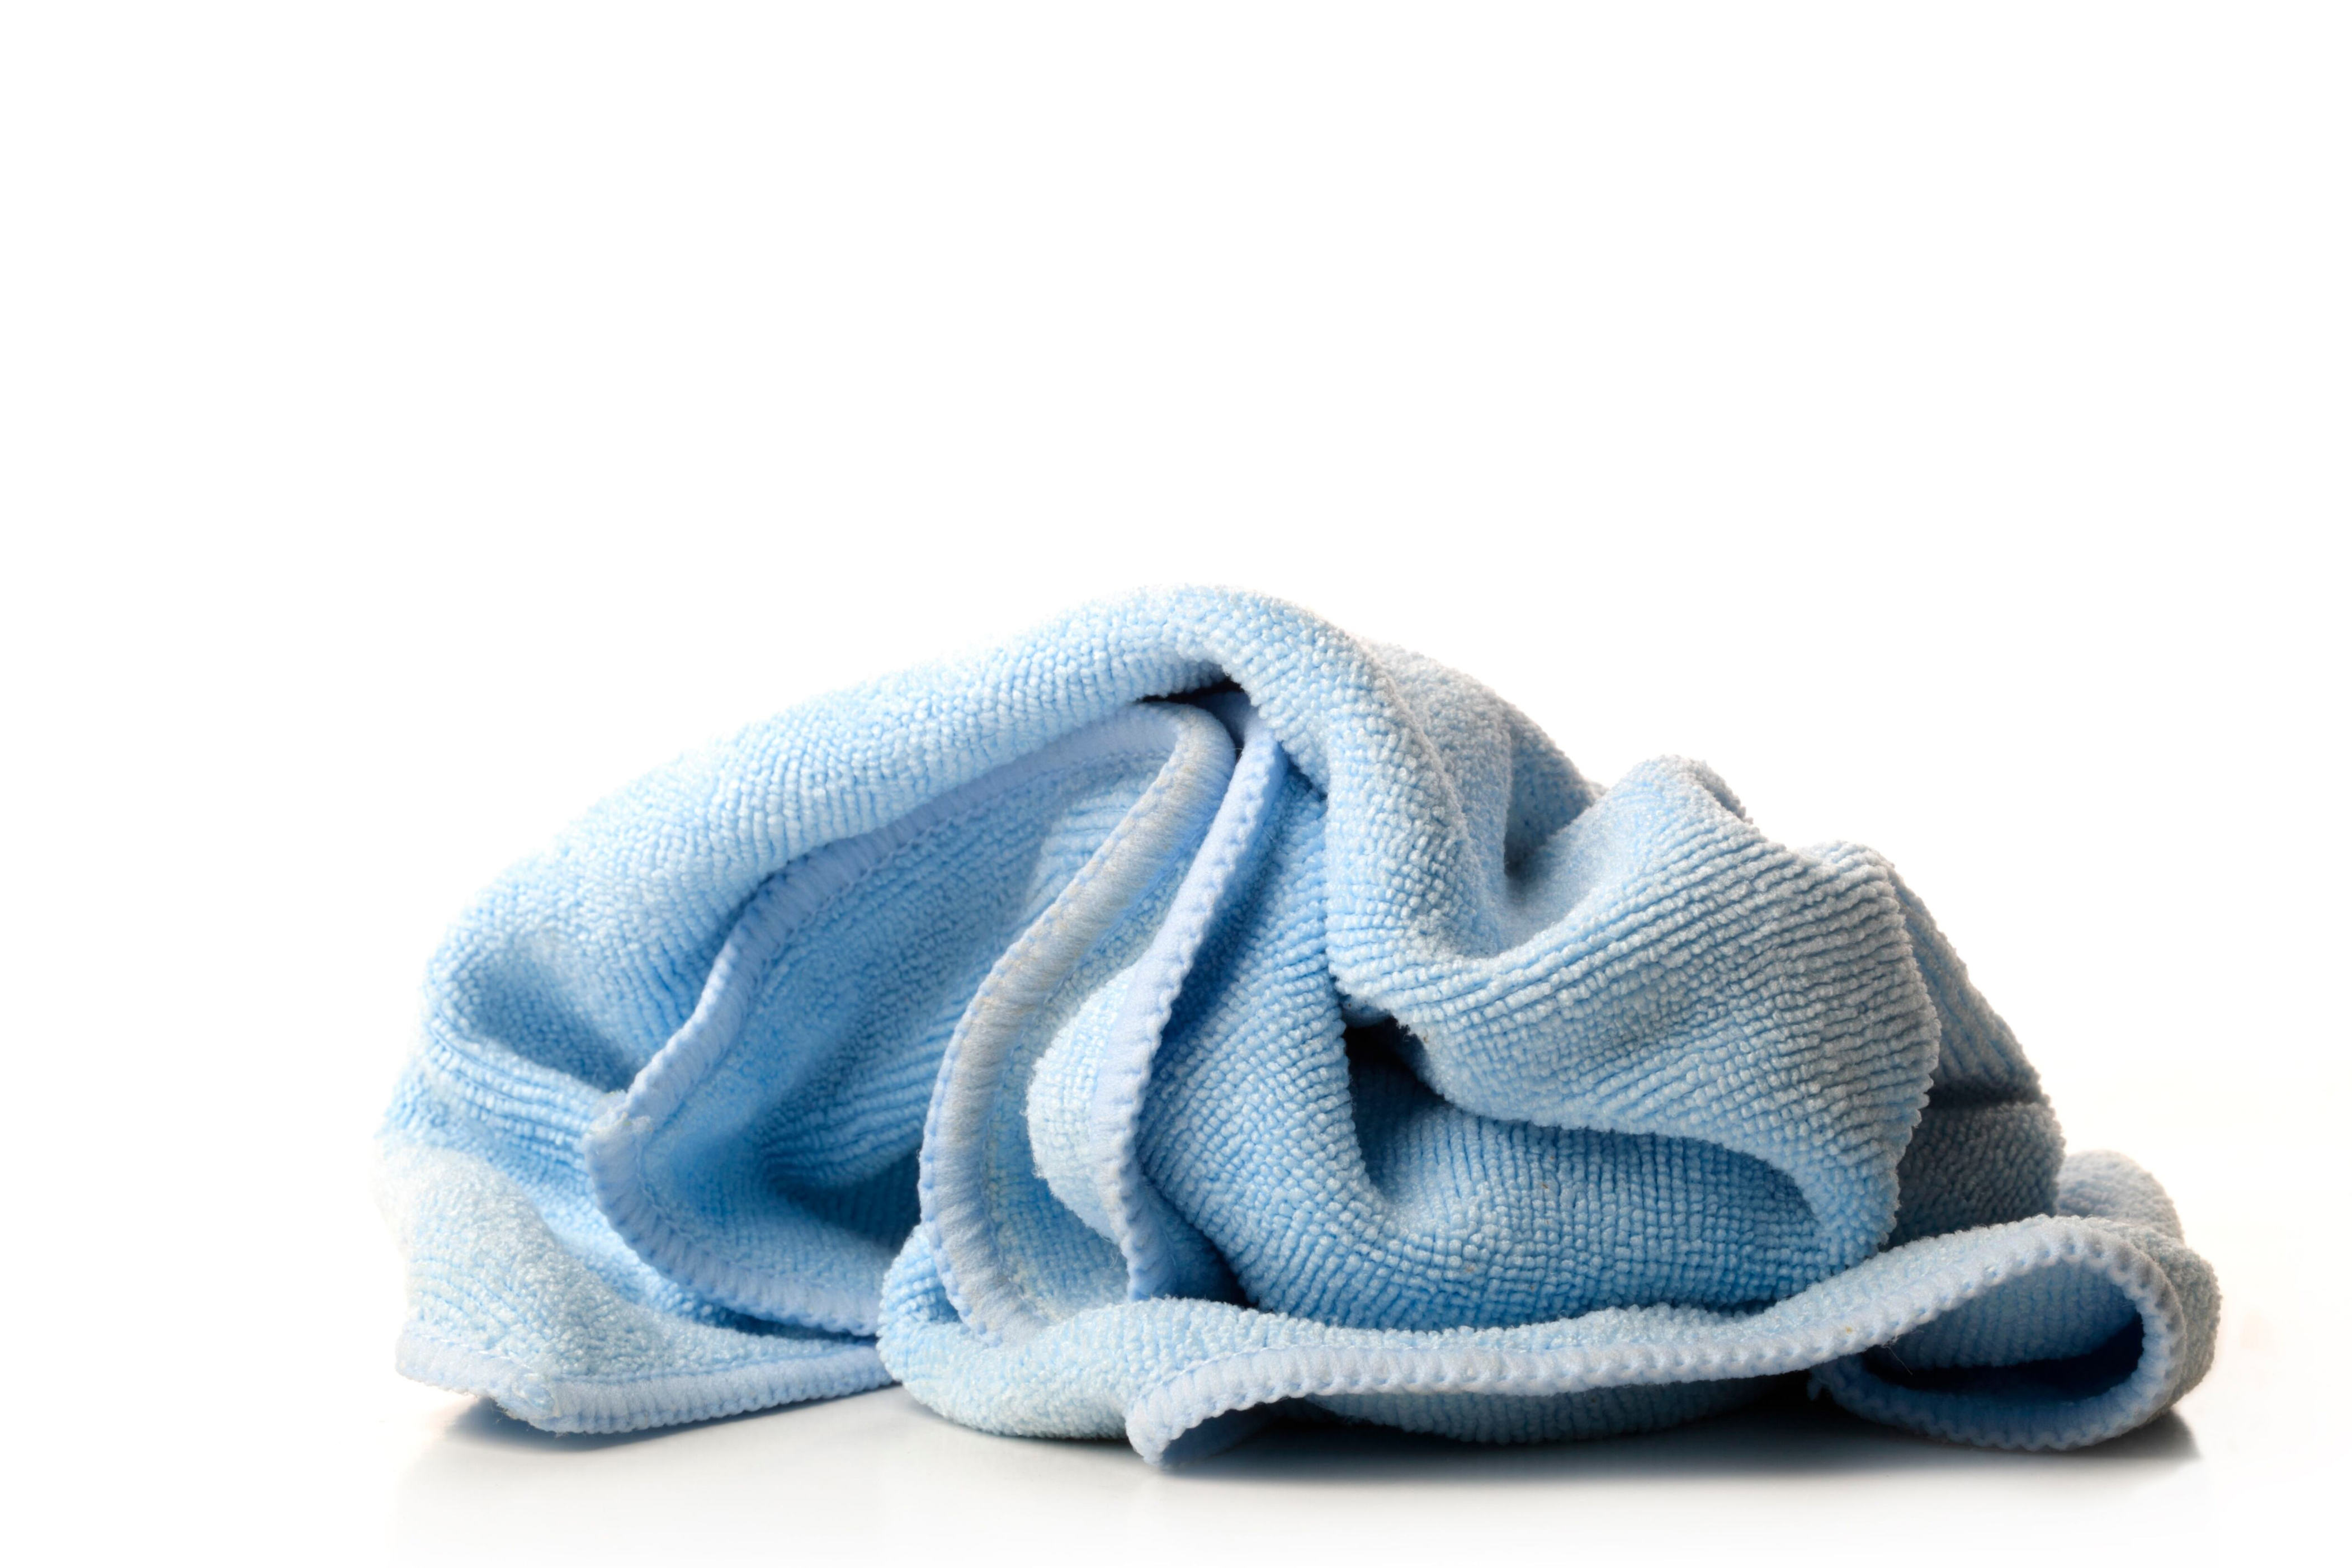 ¿qué prendas no se deberían lavar con suavizante?